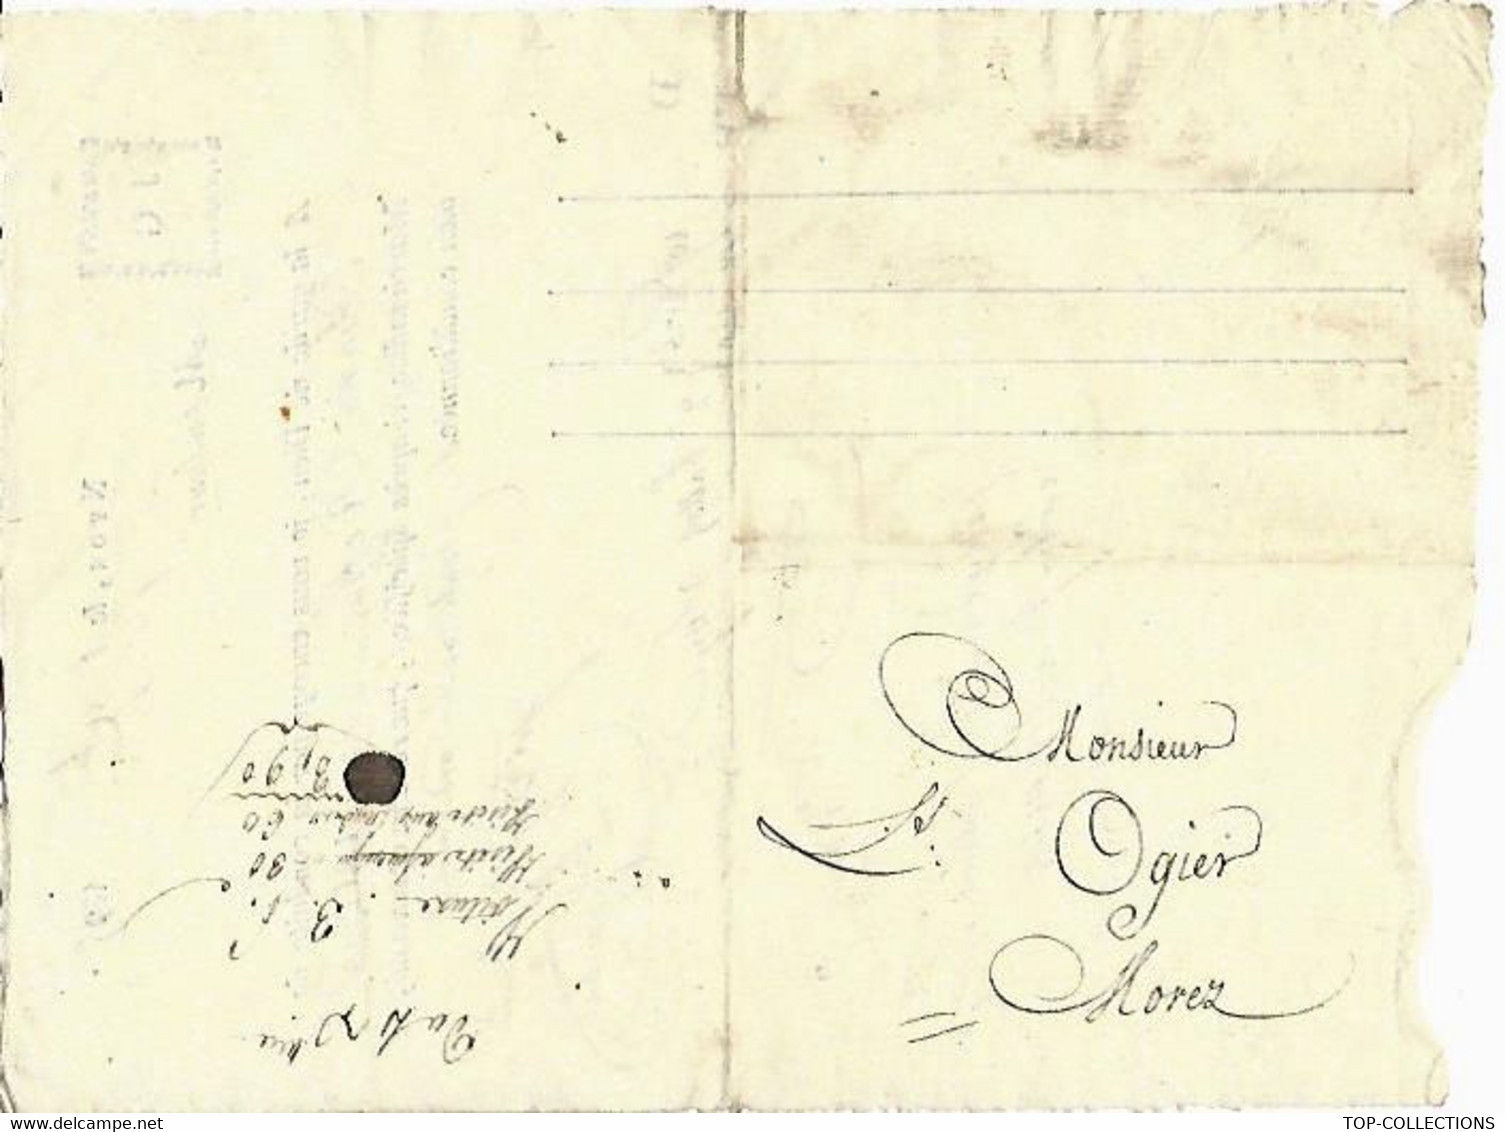 1815 Jacques Galliard à Nyon SUISSE Lettre De Voiture Roulage Transport Ballots De Soye Soie => Louis Ogier à Morez Jura - Suisse